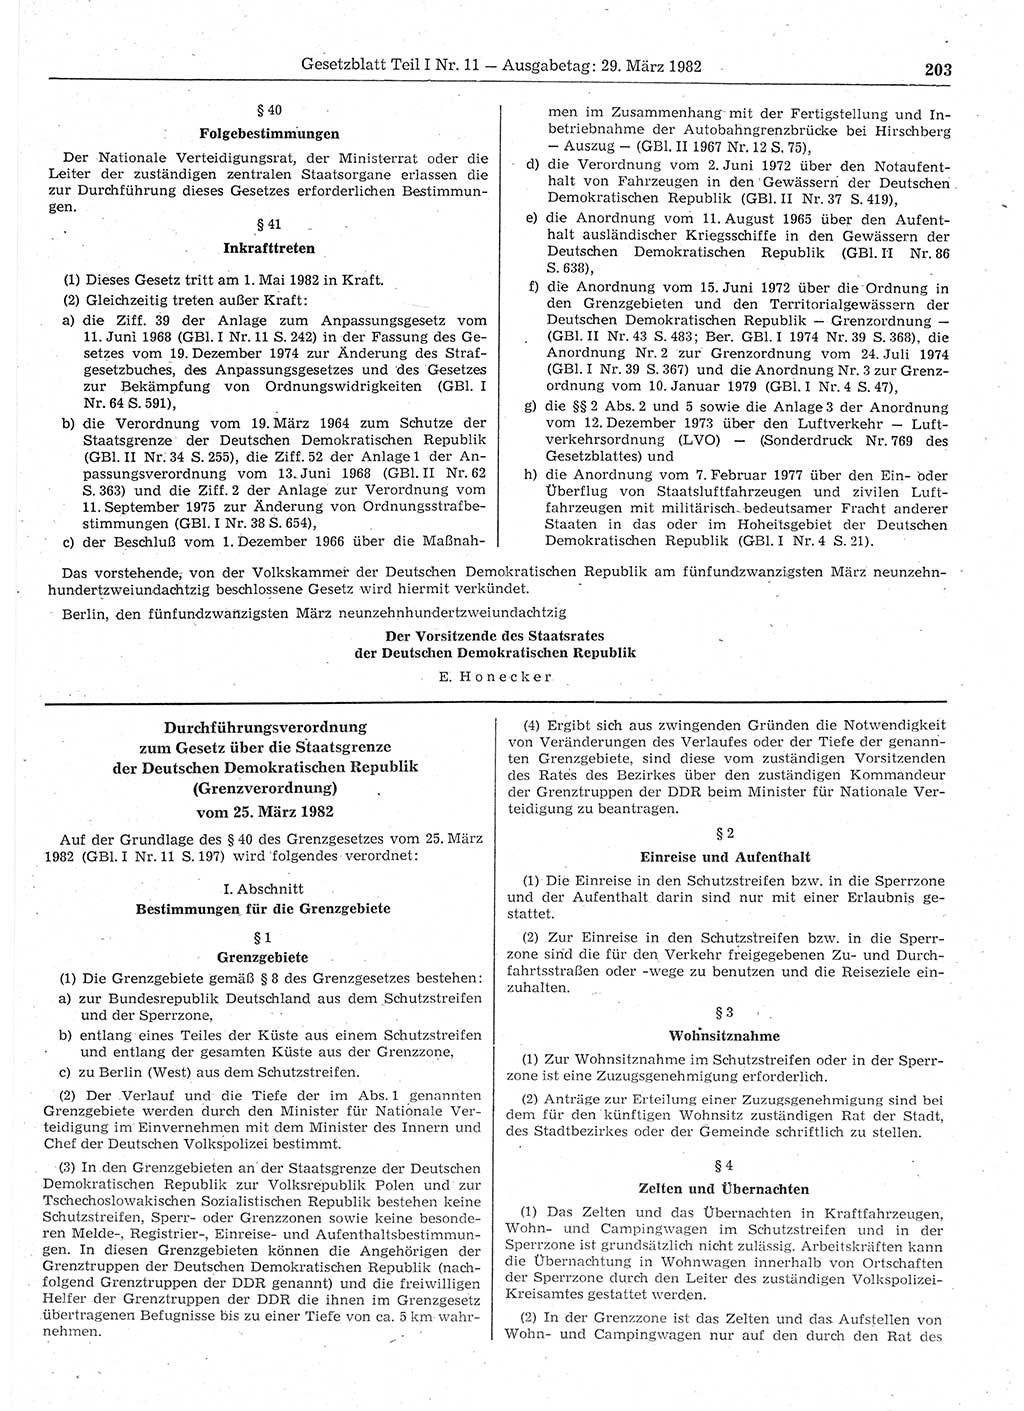 Gesetzblatt (GBl.) der Deutschen Demokratischen Republik (DDR) Teil Ⅰ 1982, Seite 203 (GBl. DDR Ⅰ 1982, S. 203)